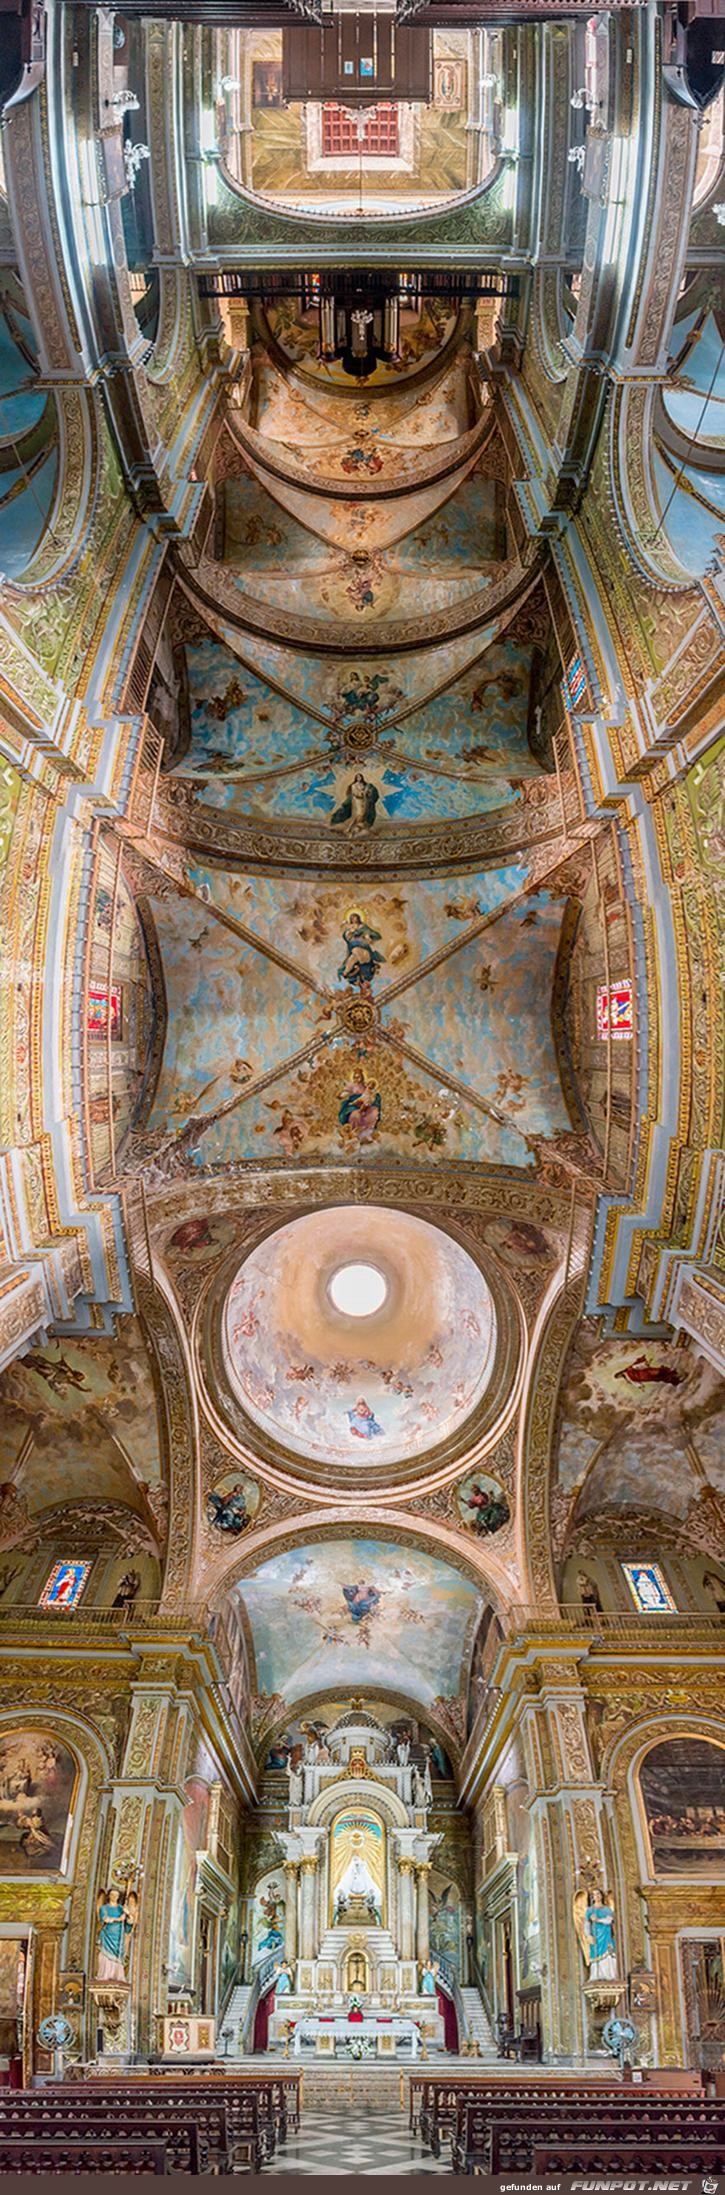 Ungewhnliche Panoramabilder aus Kirchen